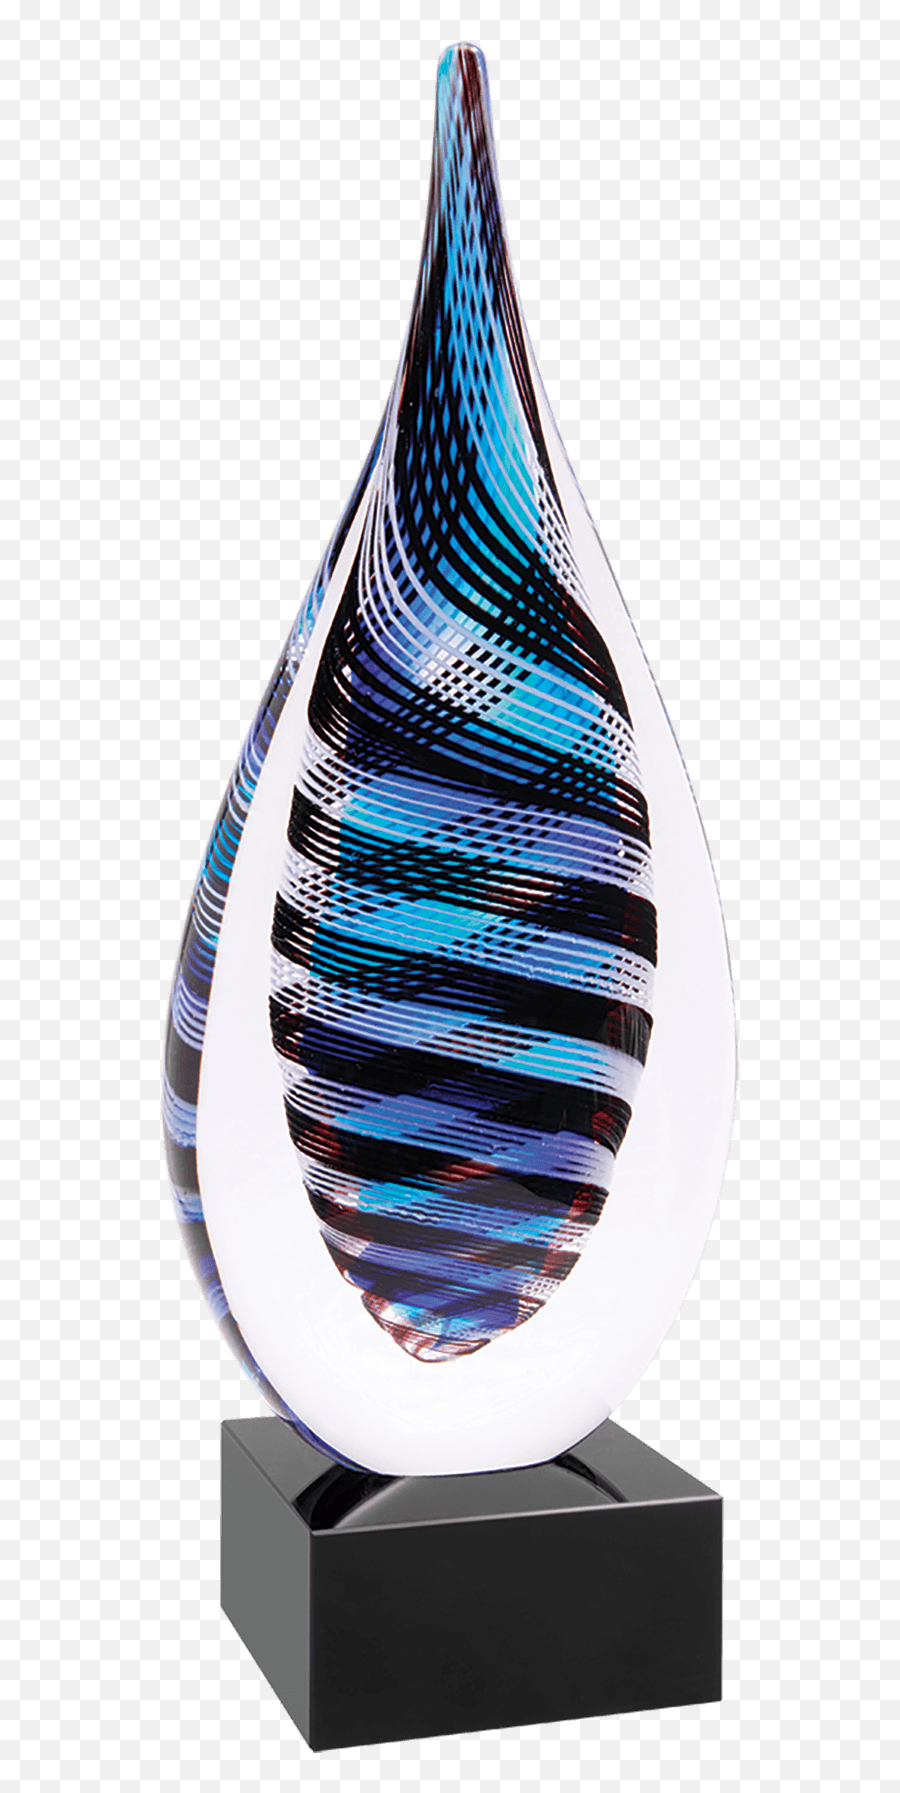 Raindrop Art Glass - Vase Png,Raindrop Png